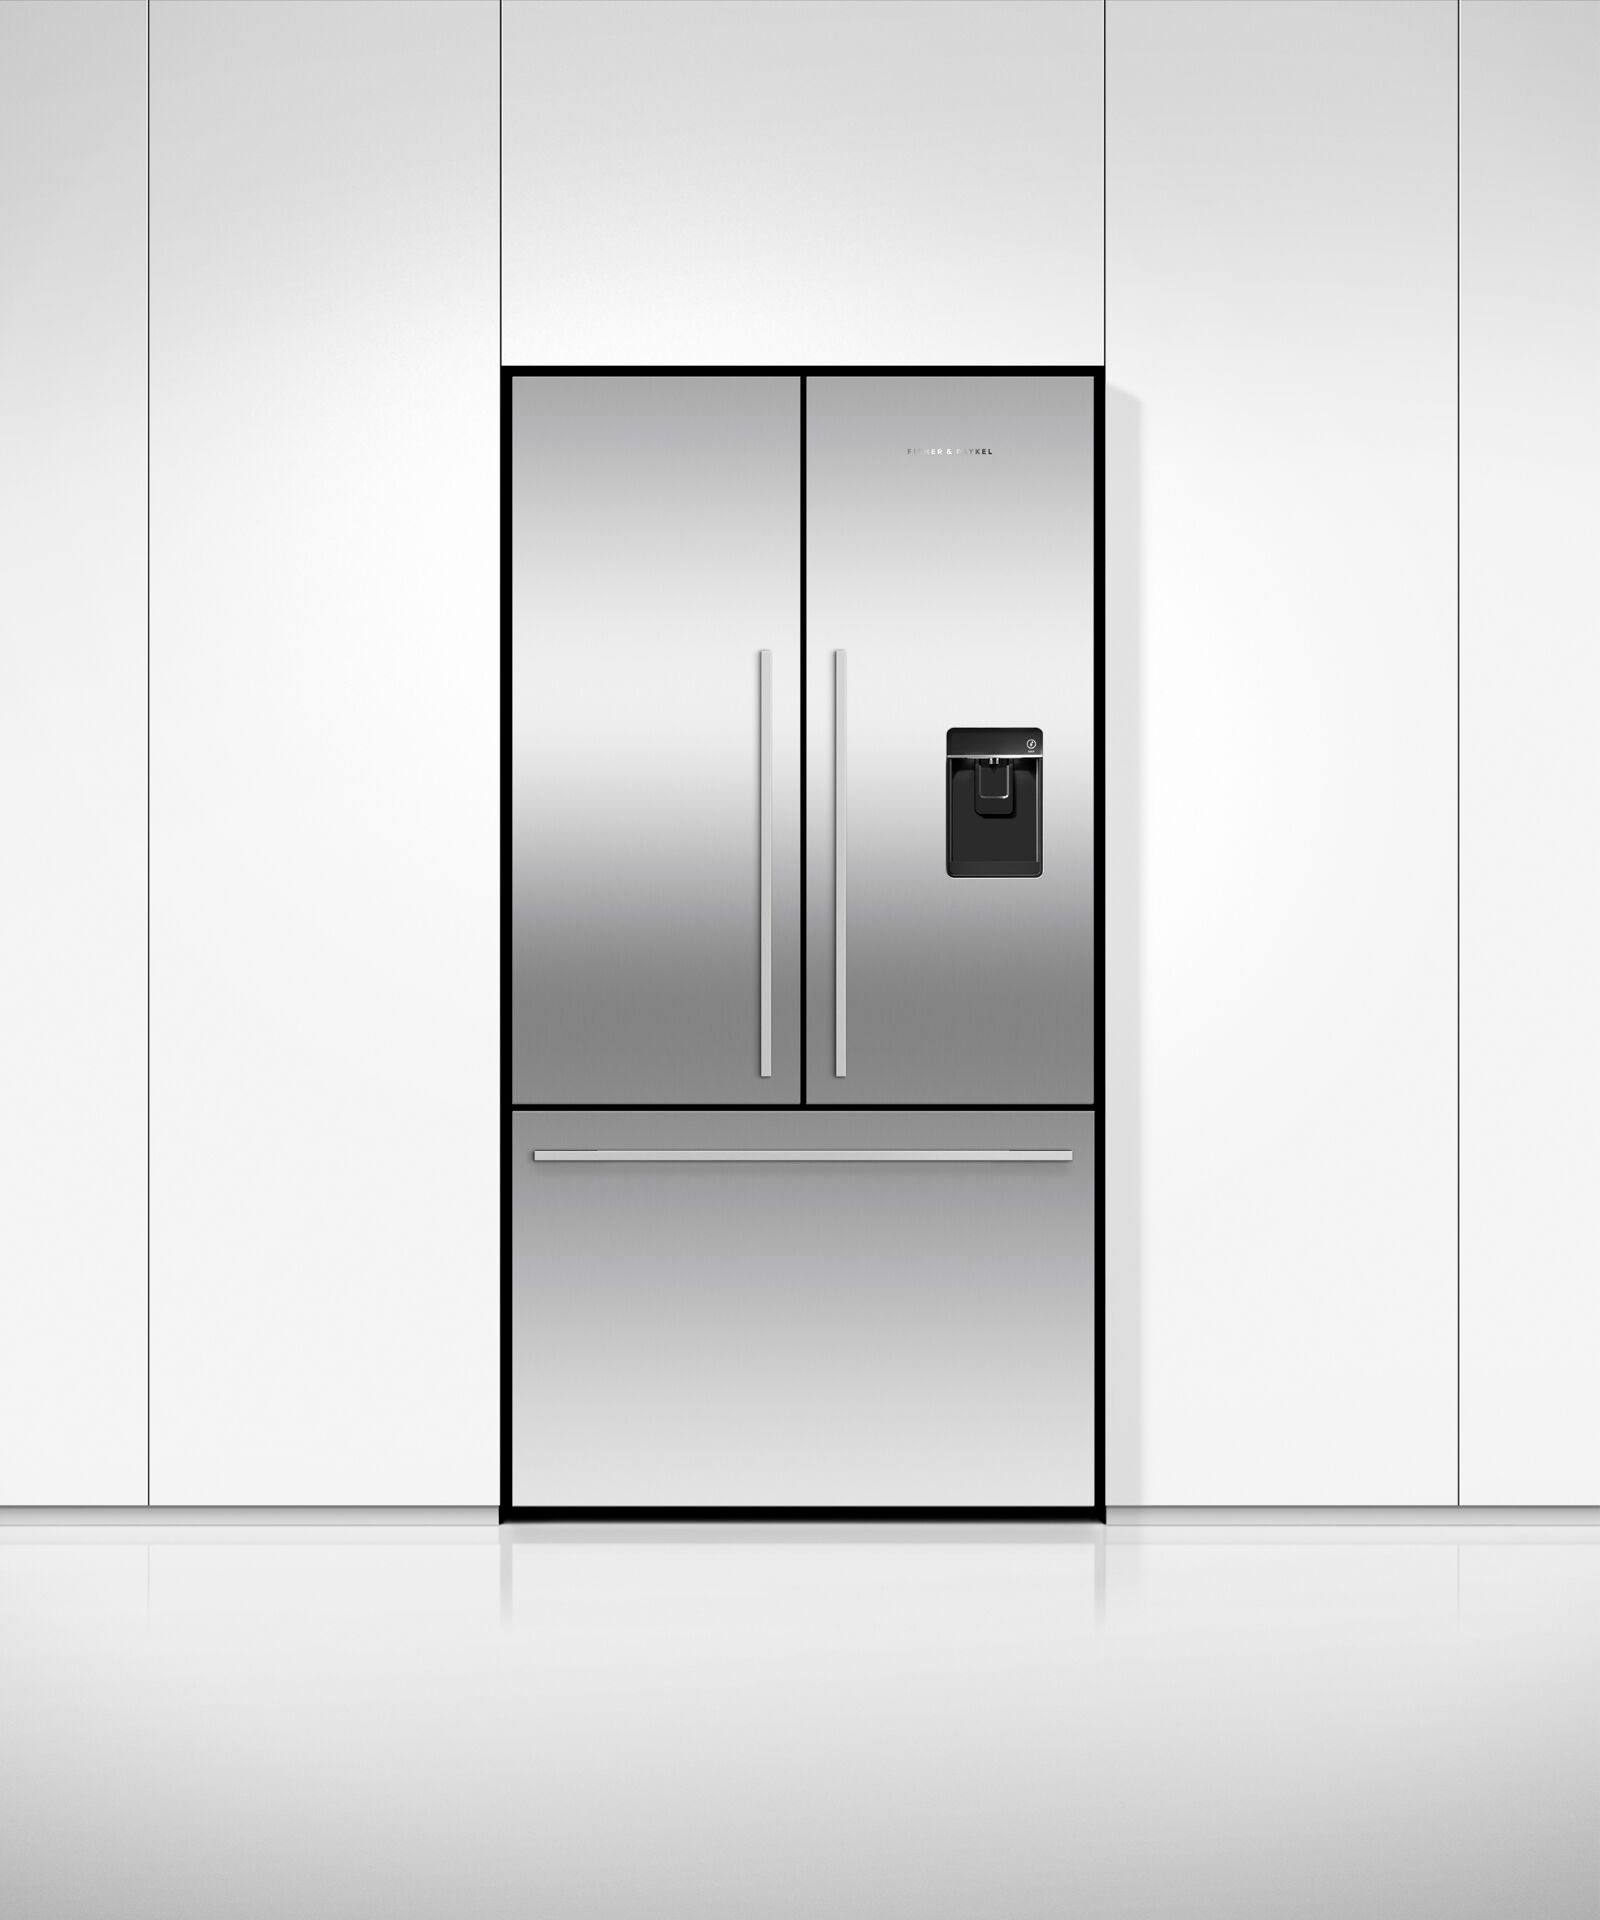 法式對開門雪櫃, 90cm, 自動製冰和冰水, gallery image 3.0